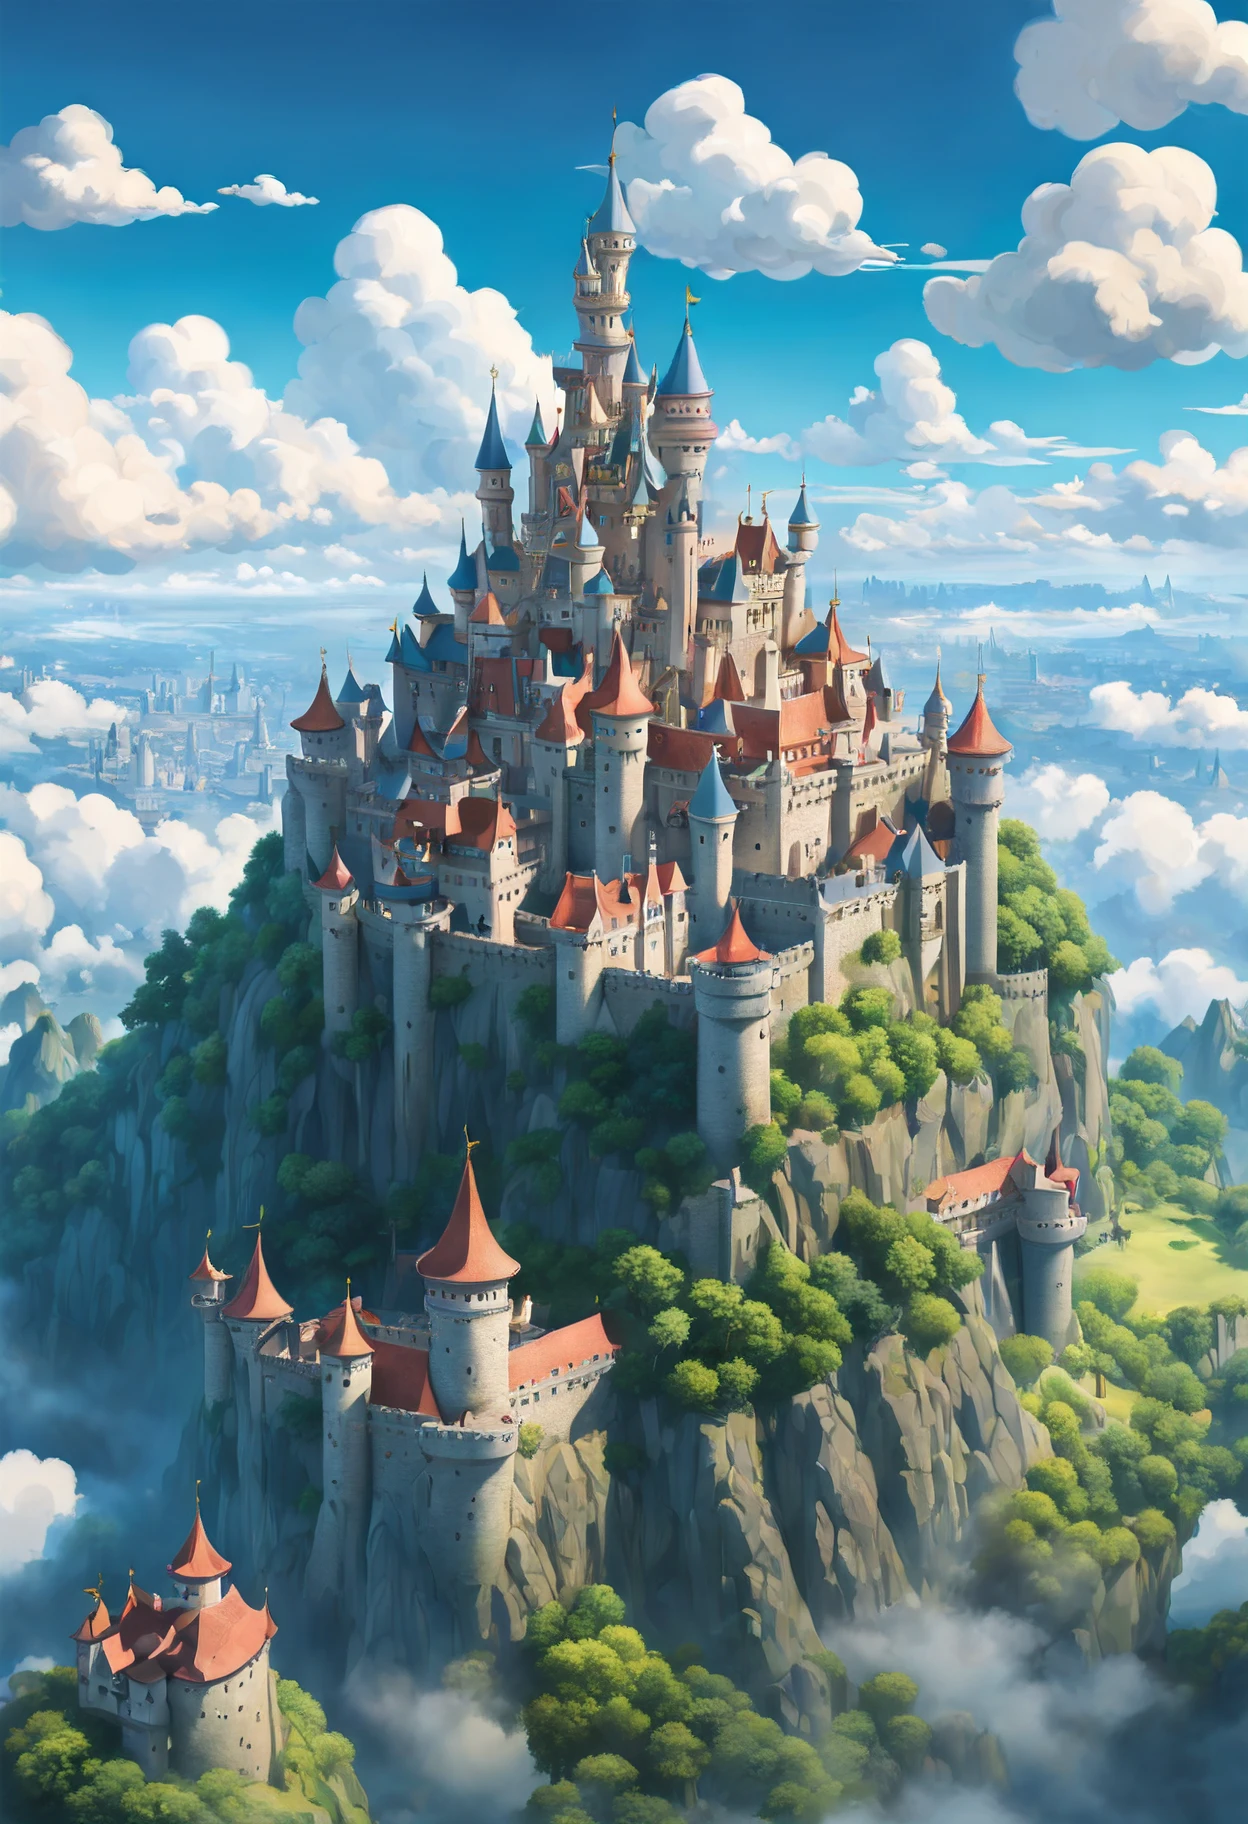 Eine Fusion des Kunststils von Hayao Miyazaki und Studio Ghibli, [Schloss|Himmel Festung], schwebend zwischen den Wolken, herrliche Aussicht auf eine (animiertes Königreich im Himmel:1.5), gesehen durch die Linse eines (Drohne:1.2), eingefangen in lebendigen, Panorama 8K, mit skurrilen Farben bemalt, set in a (sonniger Nachmittag), featuring meticulous details of the Schloss architecture, die Essenz eines traumhaften Kunst- und mdjrny-v4-Stils einfangen, nostalgische Beleuchtung mit Vintage-Charme, hervorgehoben durch ein [(Steven Spielberg:1.2) inspirierte filmische Magie], aufwendige Details, die an den Stil von Claude Monet und Vincent van Gogh erinnern, ein Märchen wird lebendig in einem (Teleobjektiv) Schuss